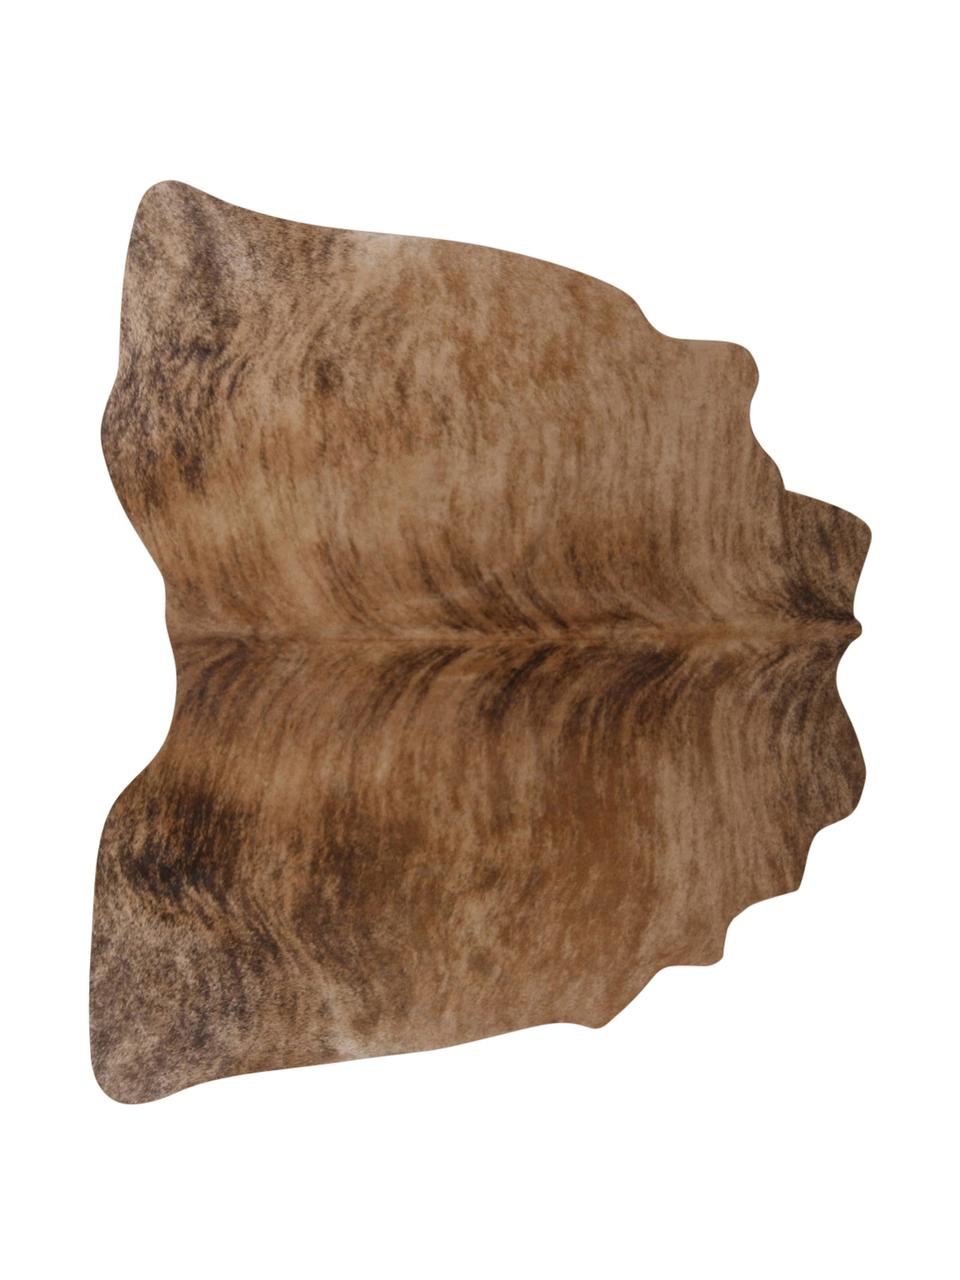 Dywan ze skóry bydlęcej Leo, Skóra bydlęca, Brązowy, tygrysi, Unikatowa skóra bydlęca 935, 160 x 180 cm